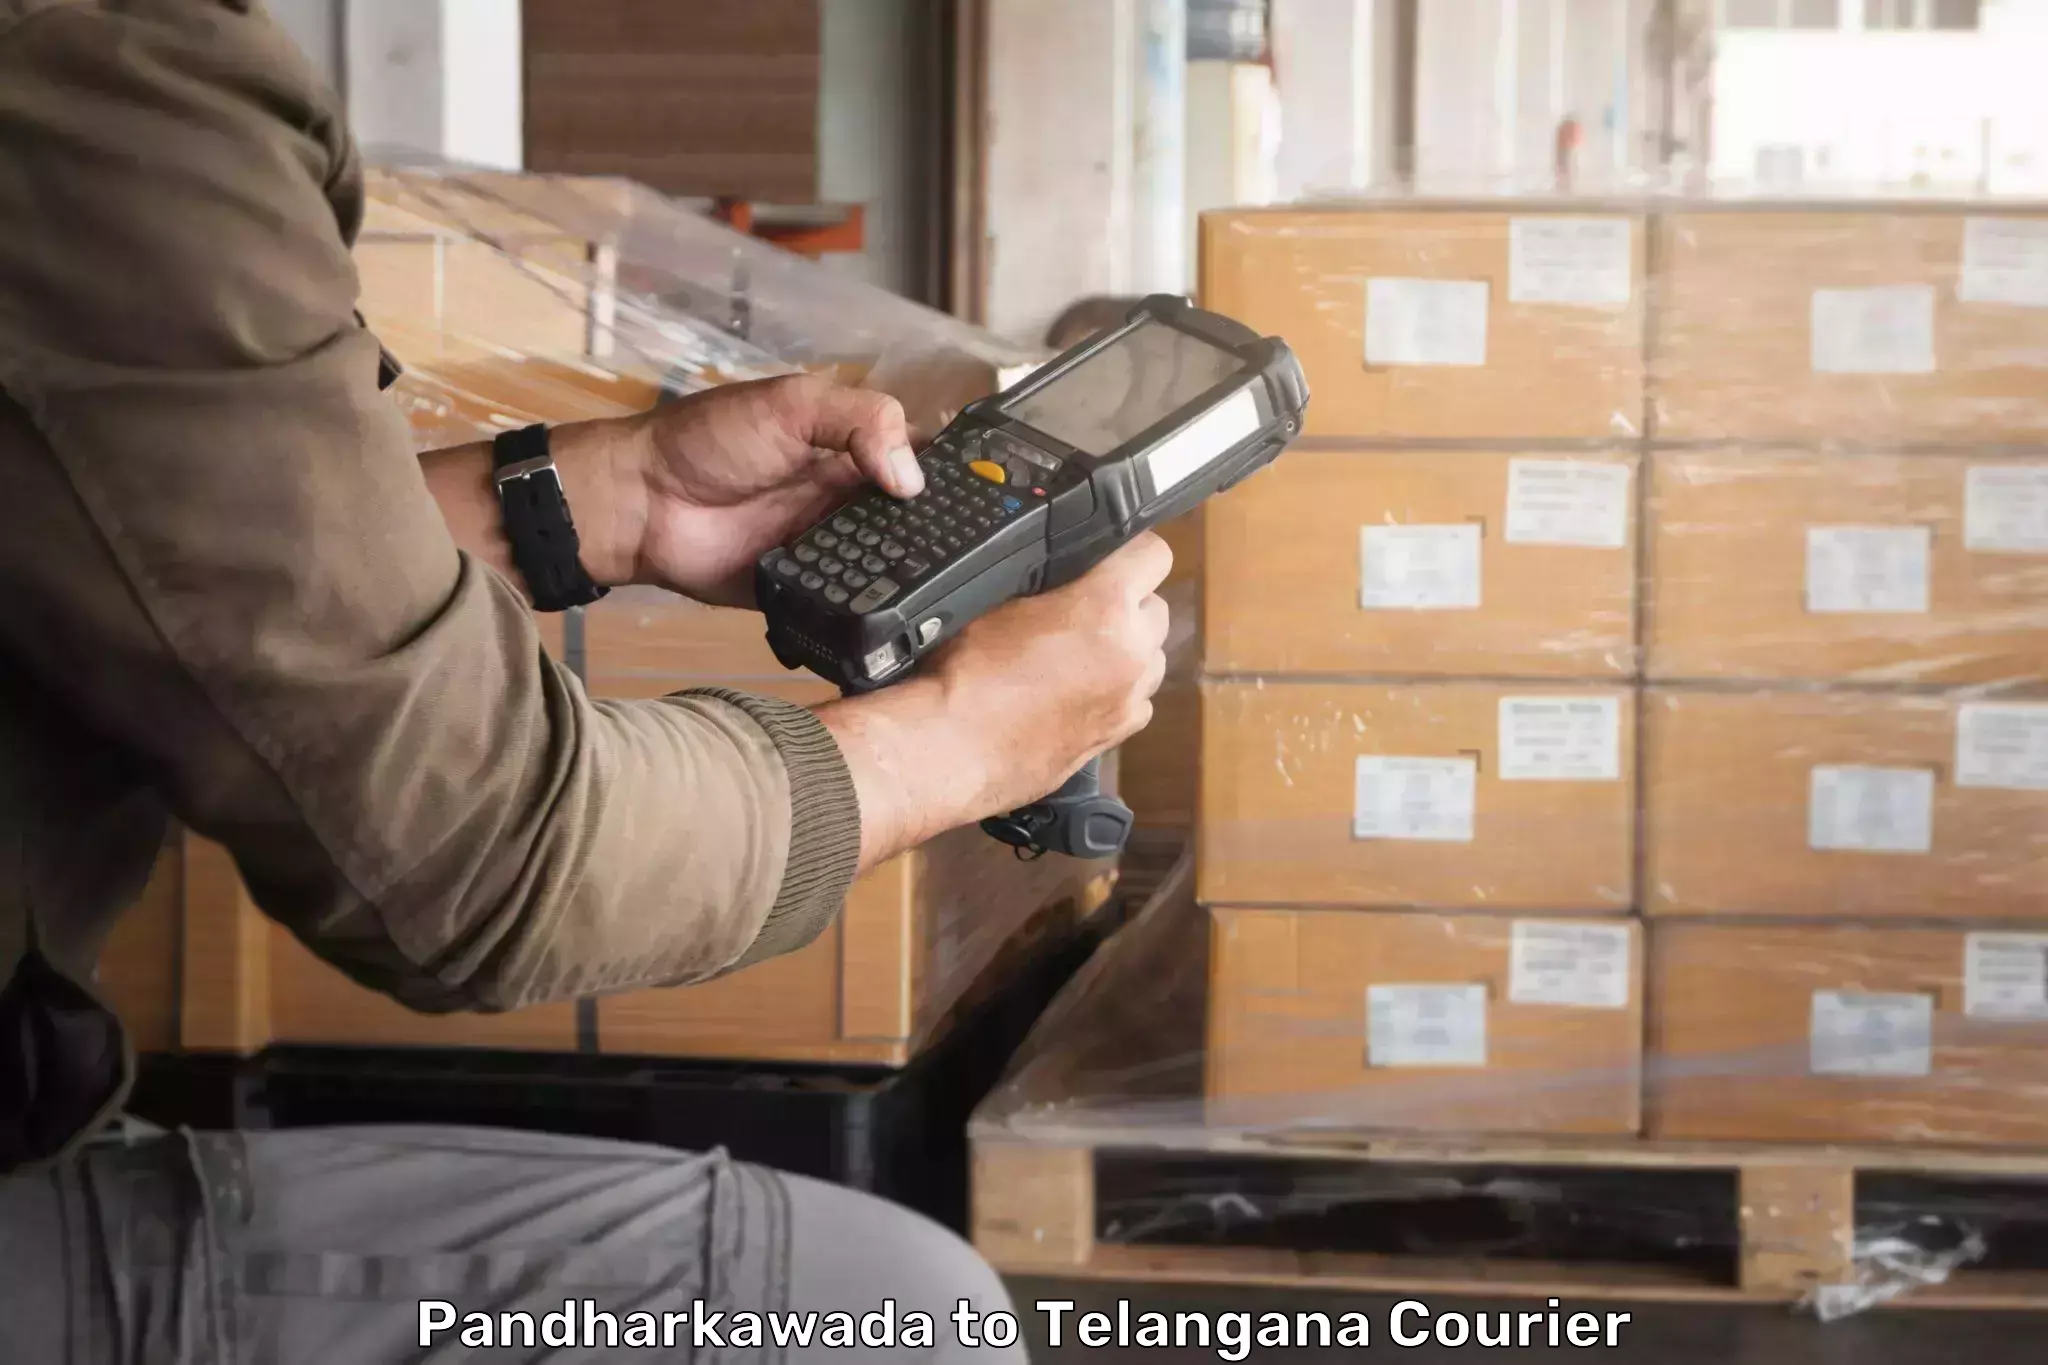 Express delivery capabilities Pandharkawada to Telangana